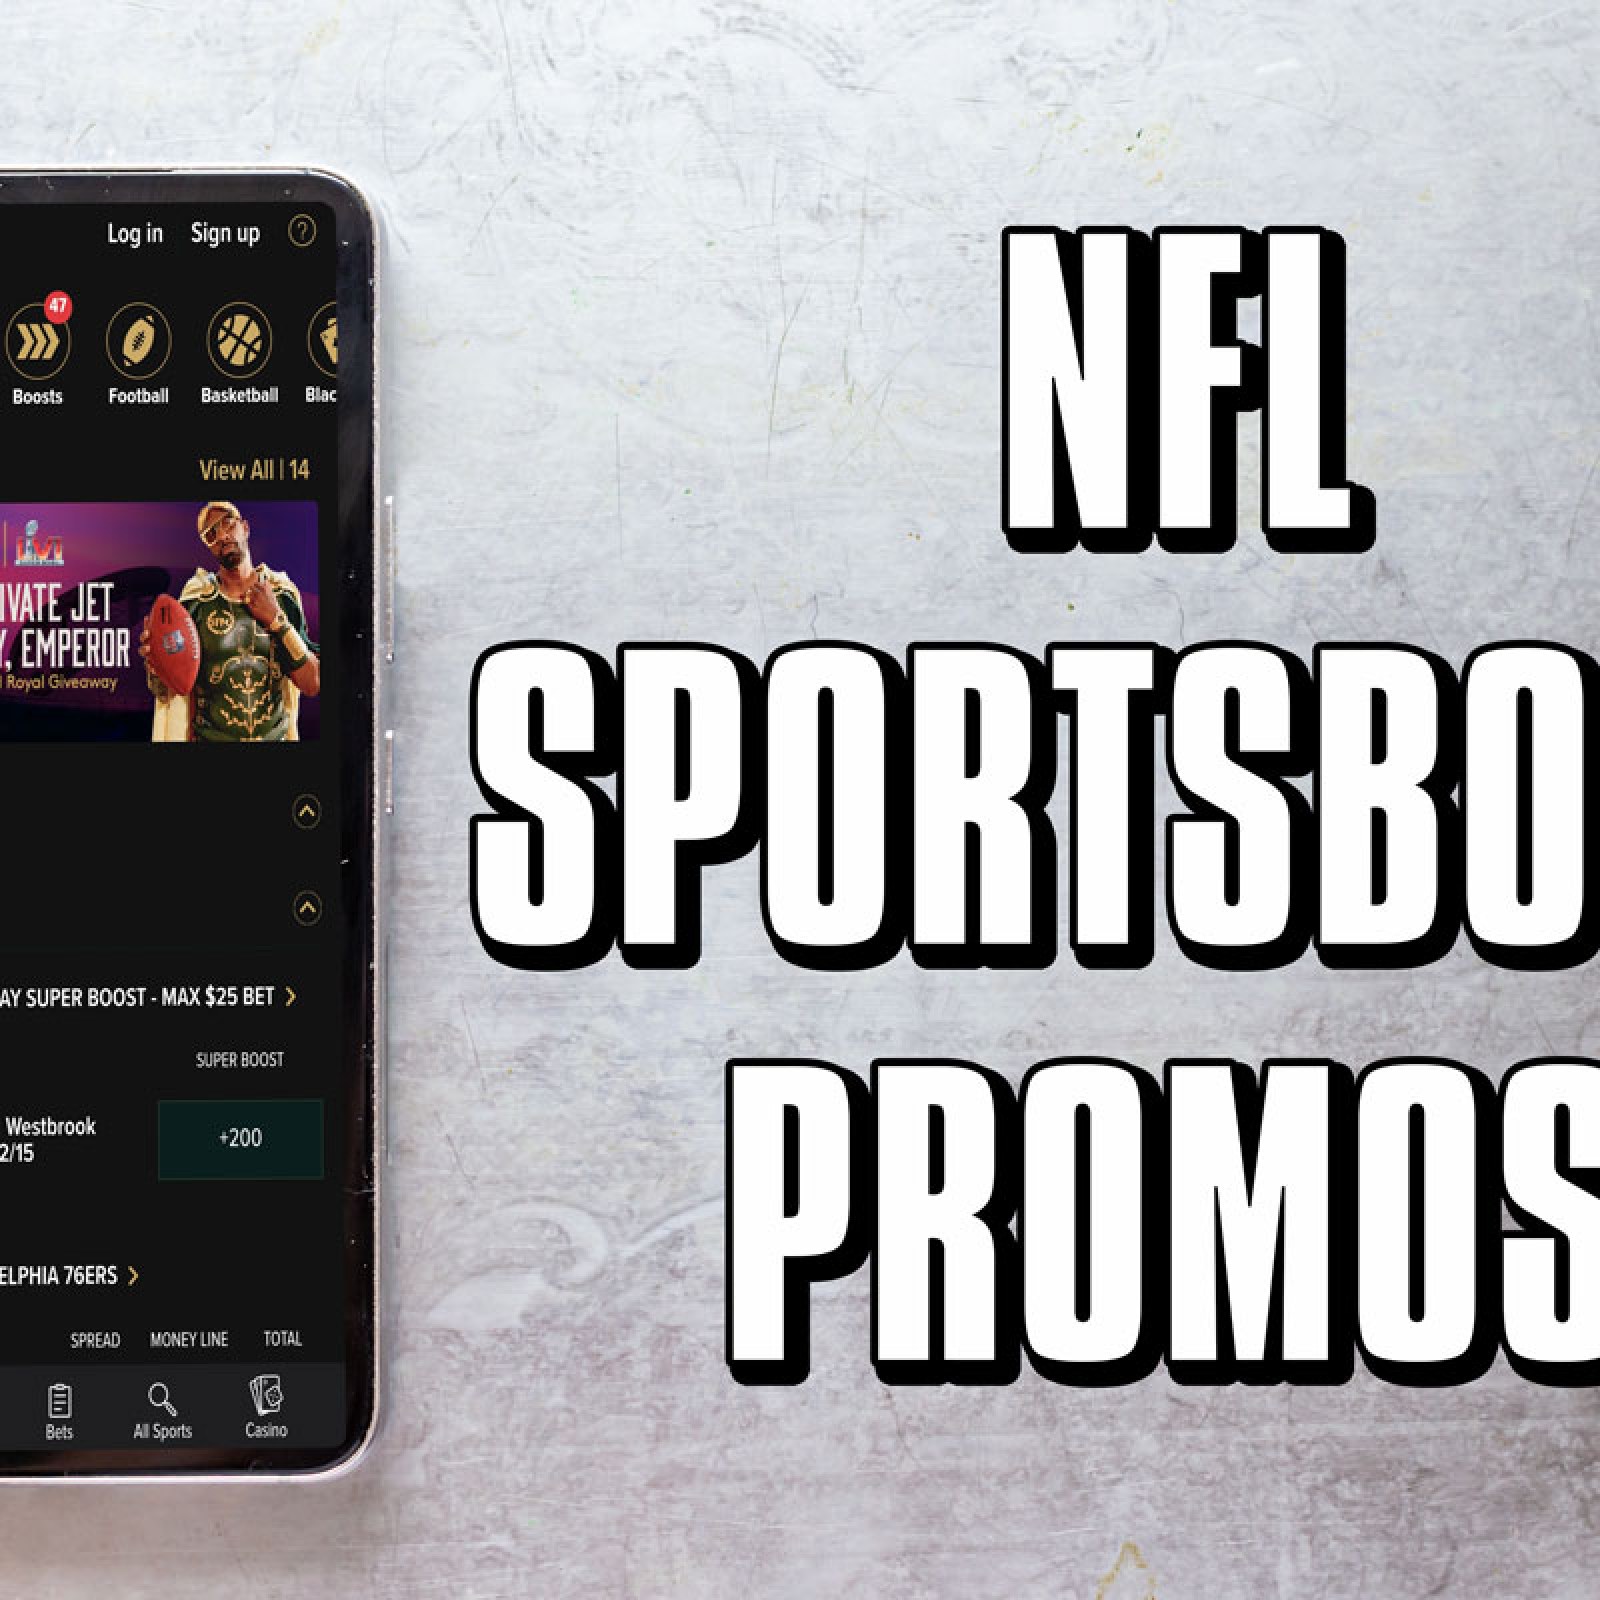 Ohio sportsbook promos: Over $2,000 in NFL Week 2 bonuses